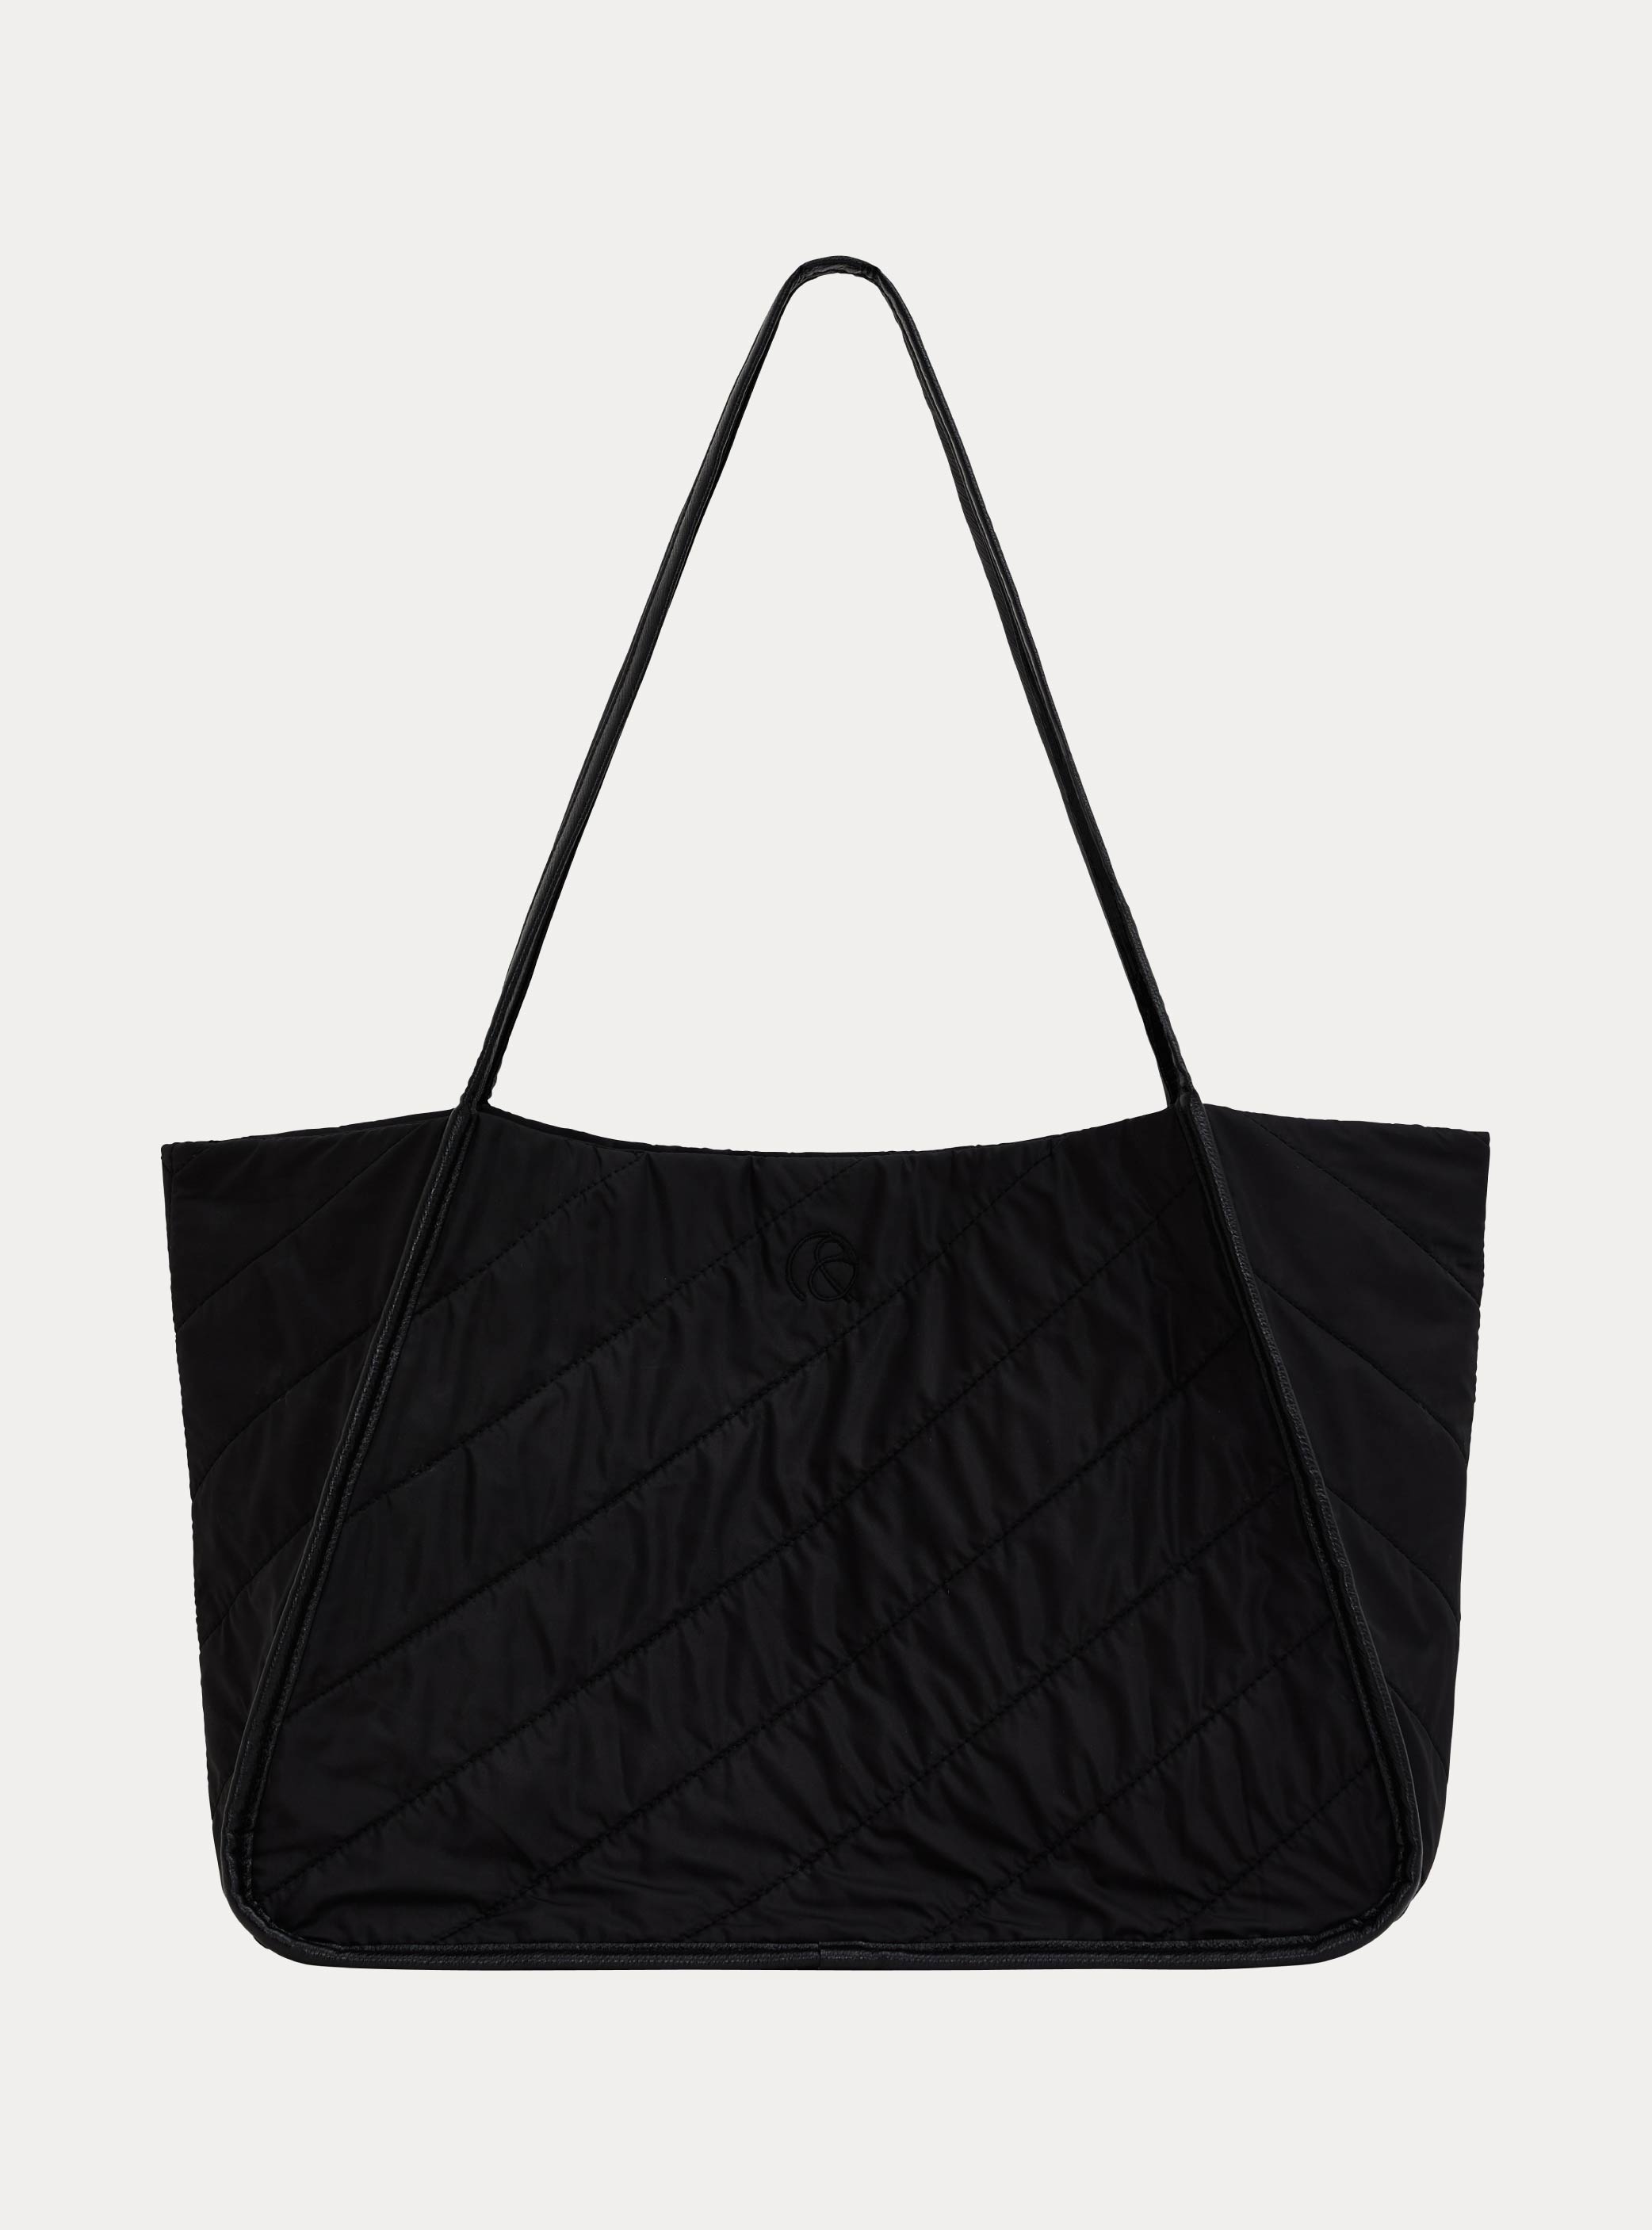 이그리트 토트백 블랙  Ygritte tote bag : black